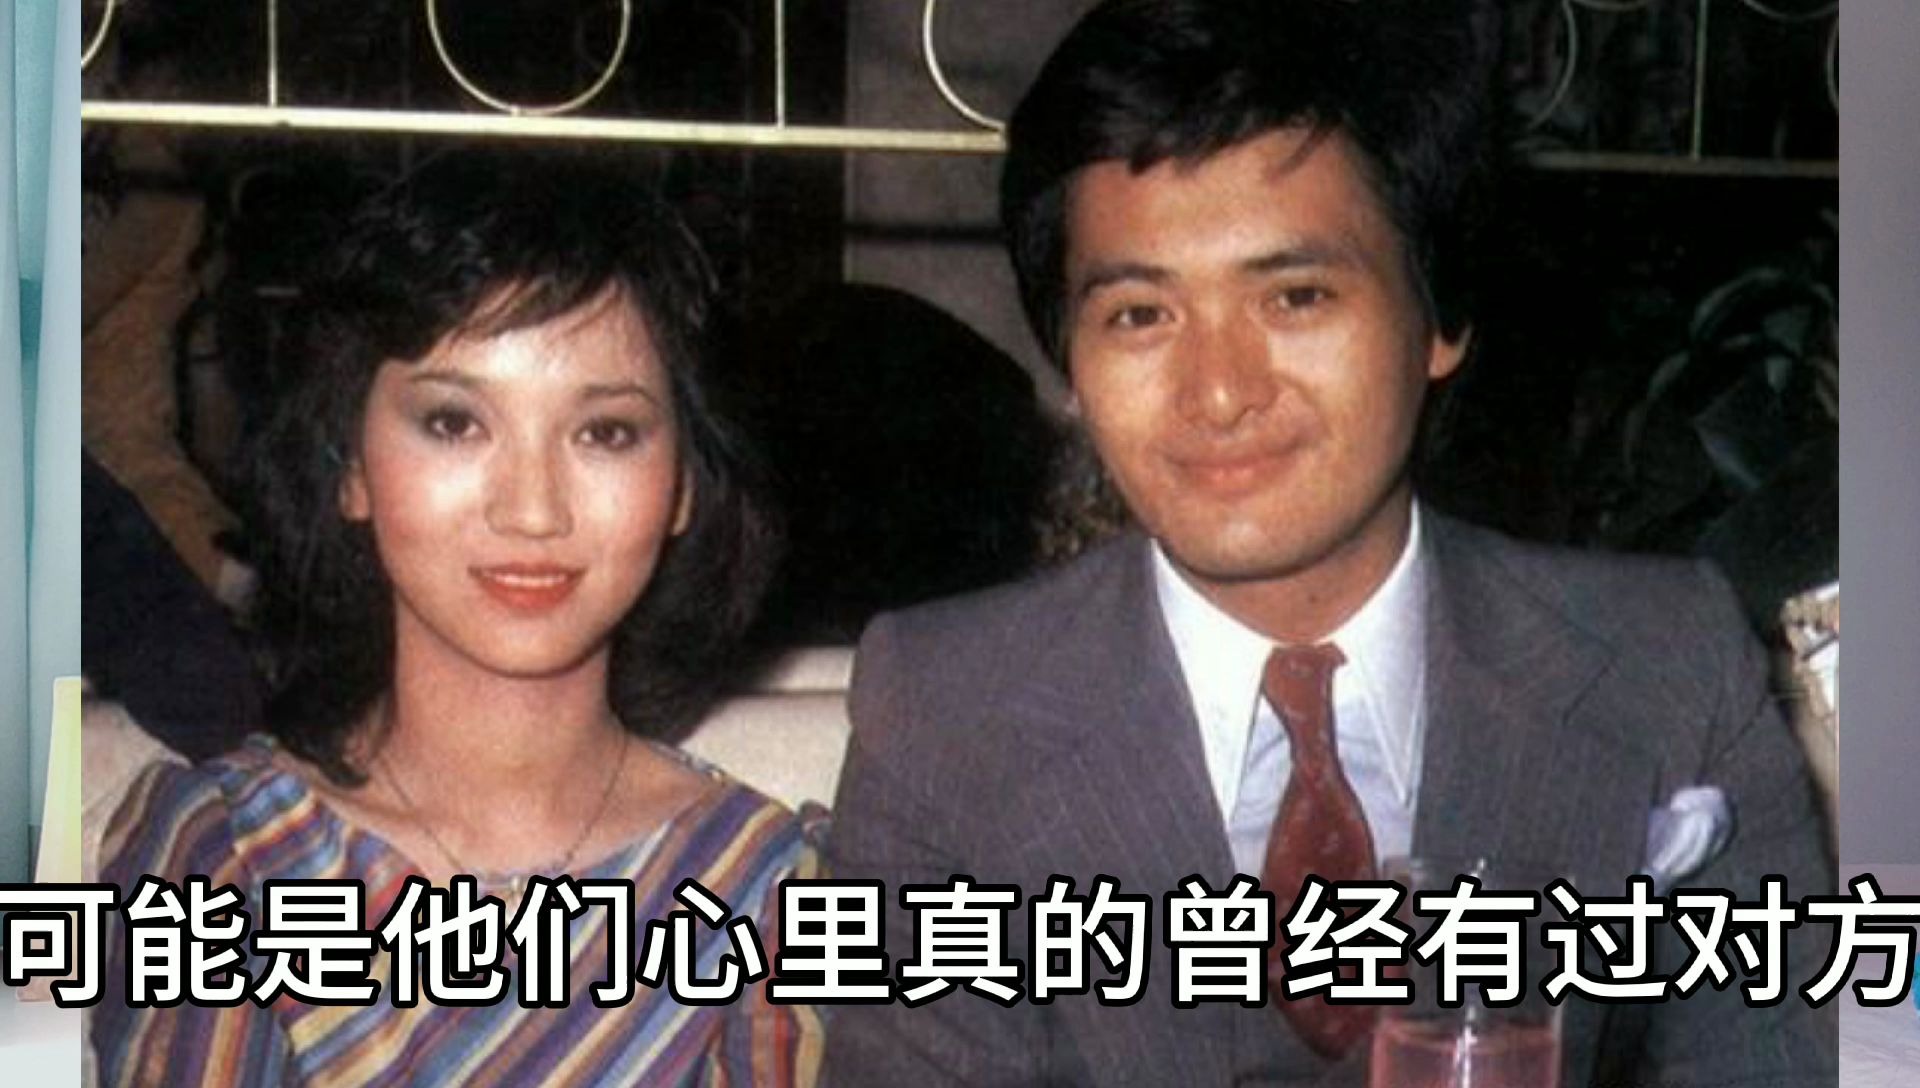 82版《上海滩》,周润发和赵雅芝20年不联系,影迷称他们金童玉女